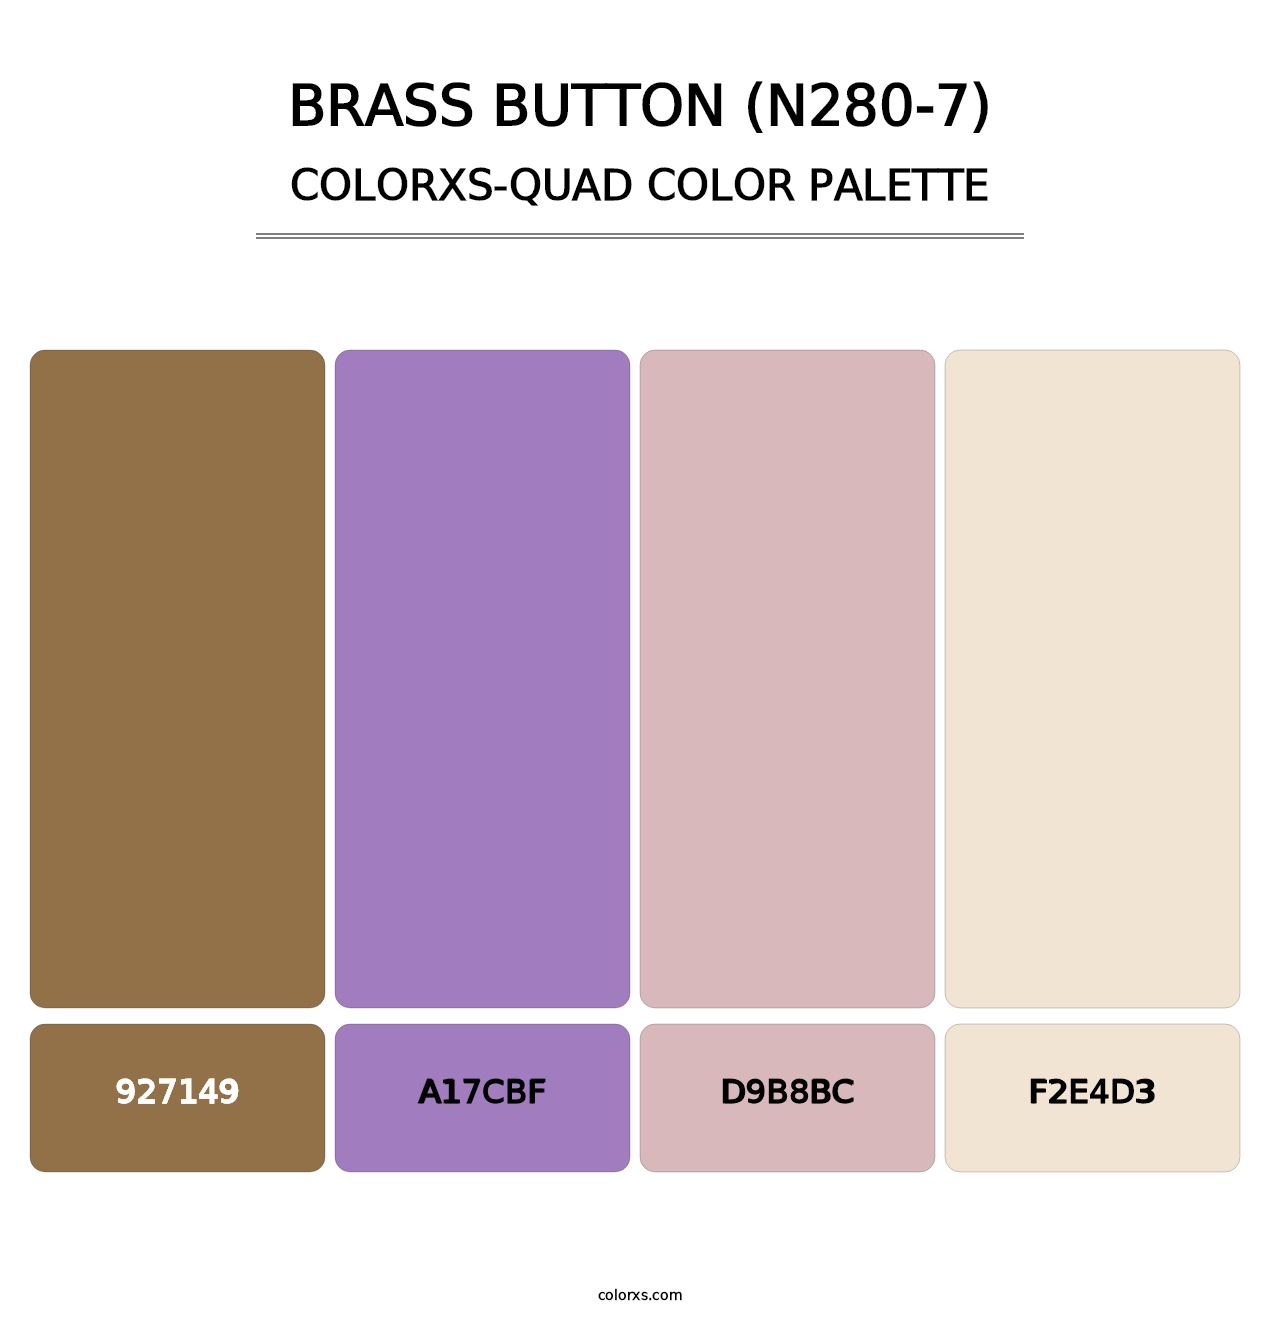 Brass Button (N280-7) - Colorxs Quad Palette